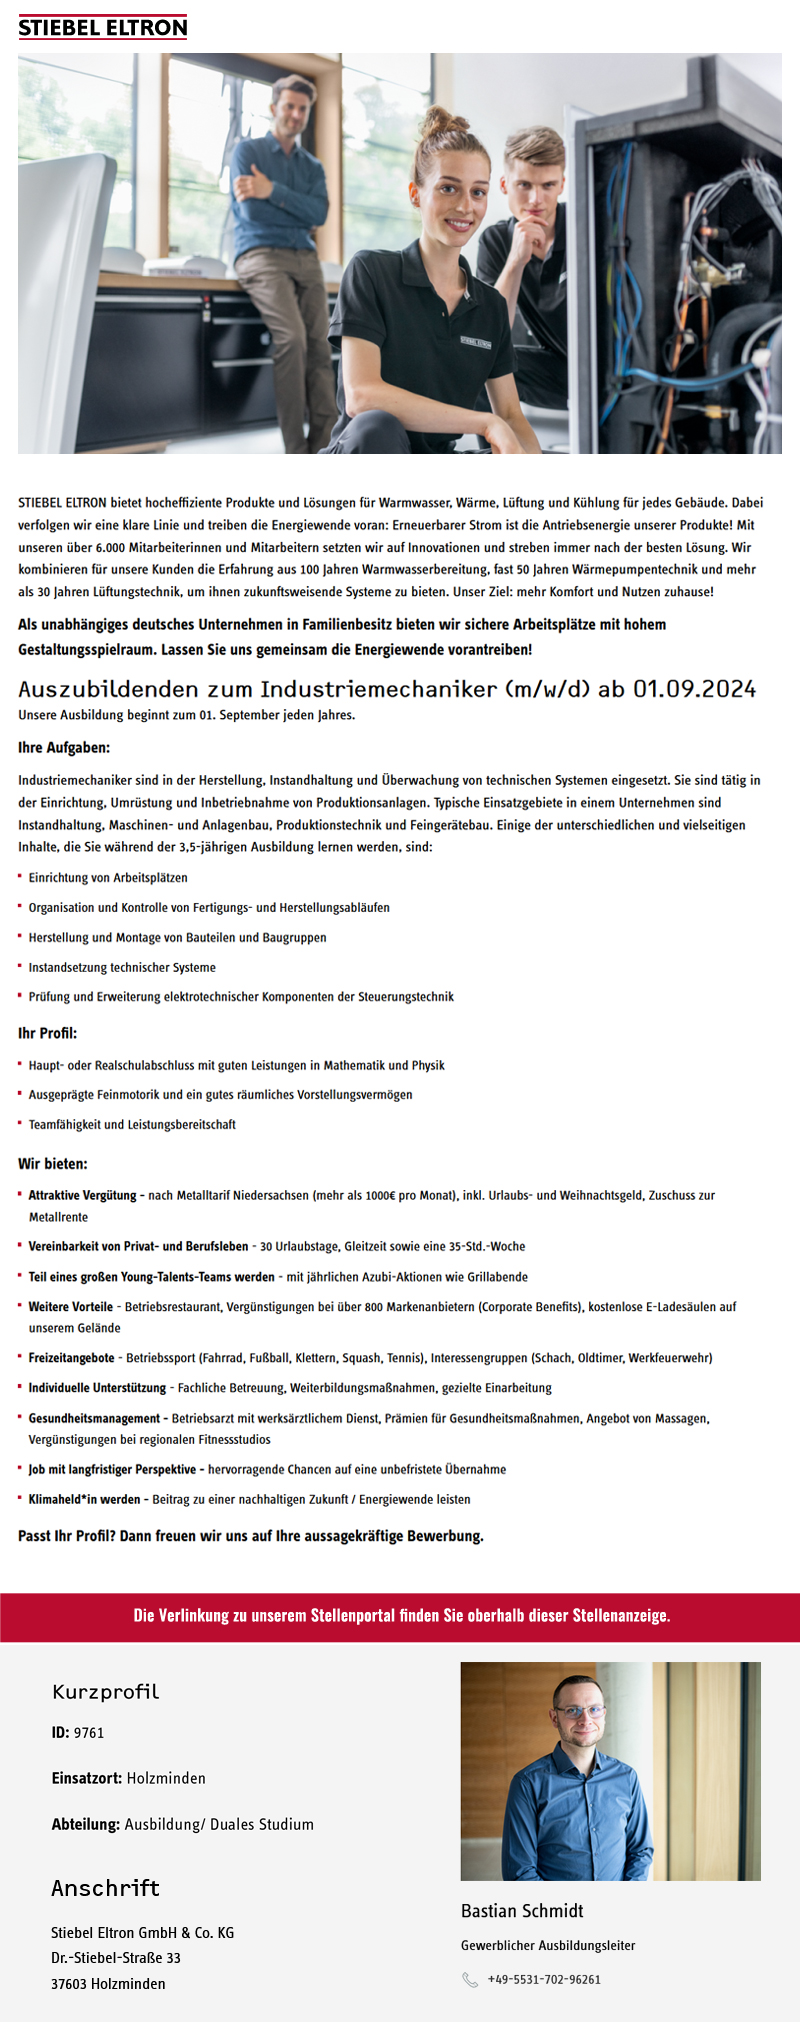 Auszubildenden zum Industriemechaniker (m/w/d) ab 01.09.2024 - Stiebel Eltron GmbH & Co. KG